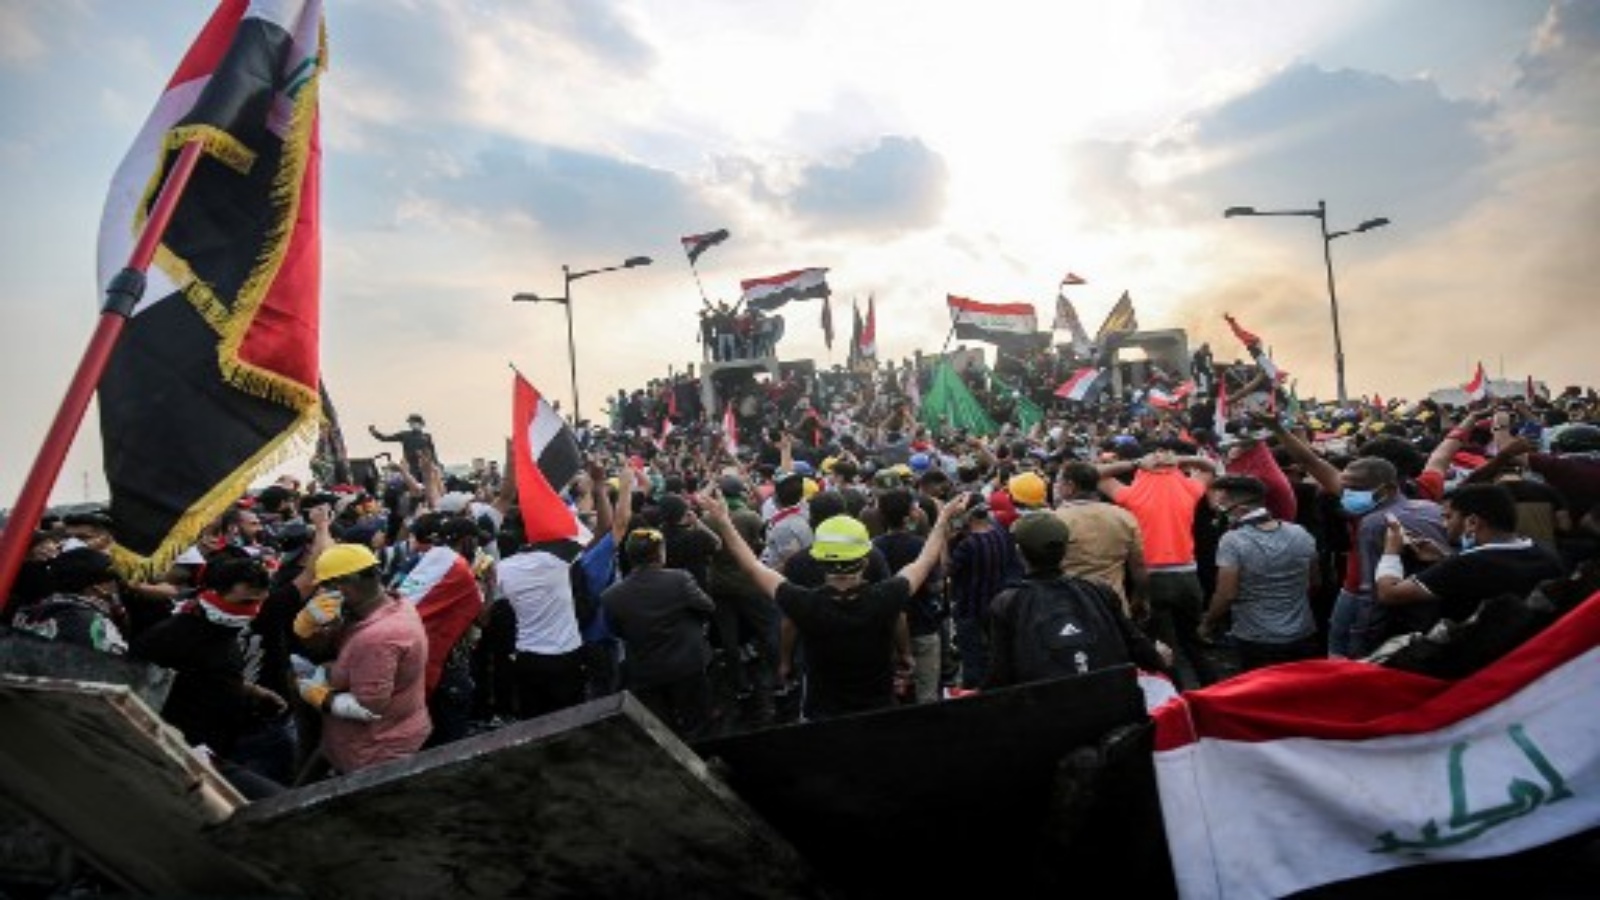 هذه الصورة التي التقطت في 29 أكتوبر / تشرين الأول 2019 ، المتظاهرون العراقيون يلوحون بالأعلام الوطنية وهم يقفون فوق حواجز خرسانية عبر جسر الجمهورية في العاصمة بغداد الذي يربط بين ساحة التحرير والمنطقة الخضراء شديدة الحراسة. أ ف ب